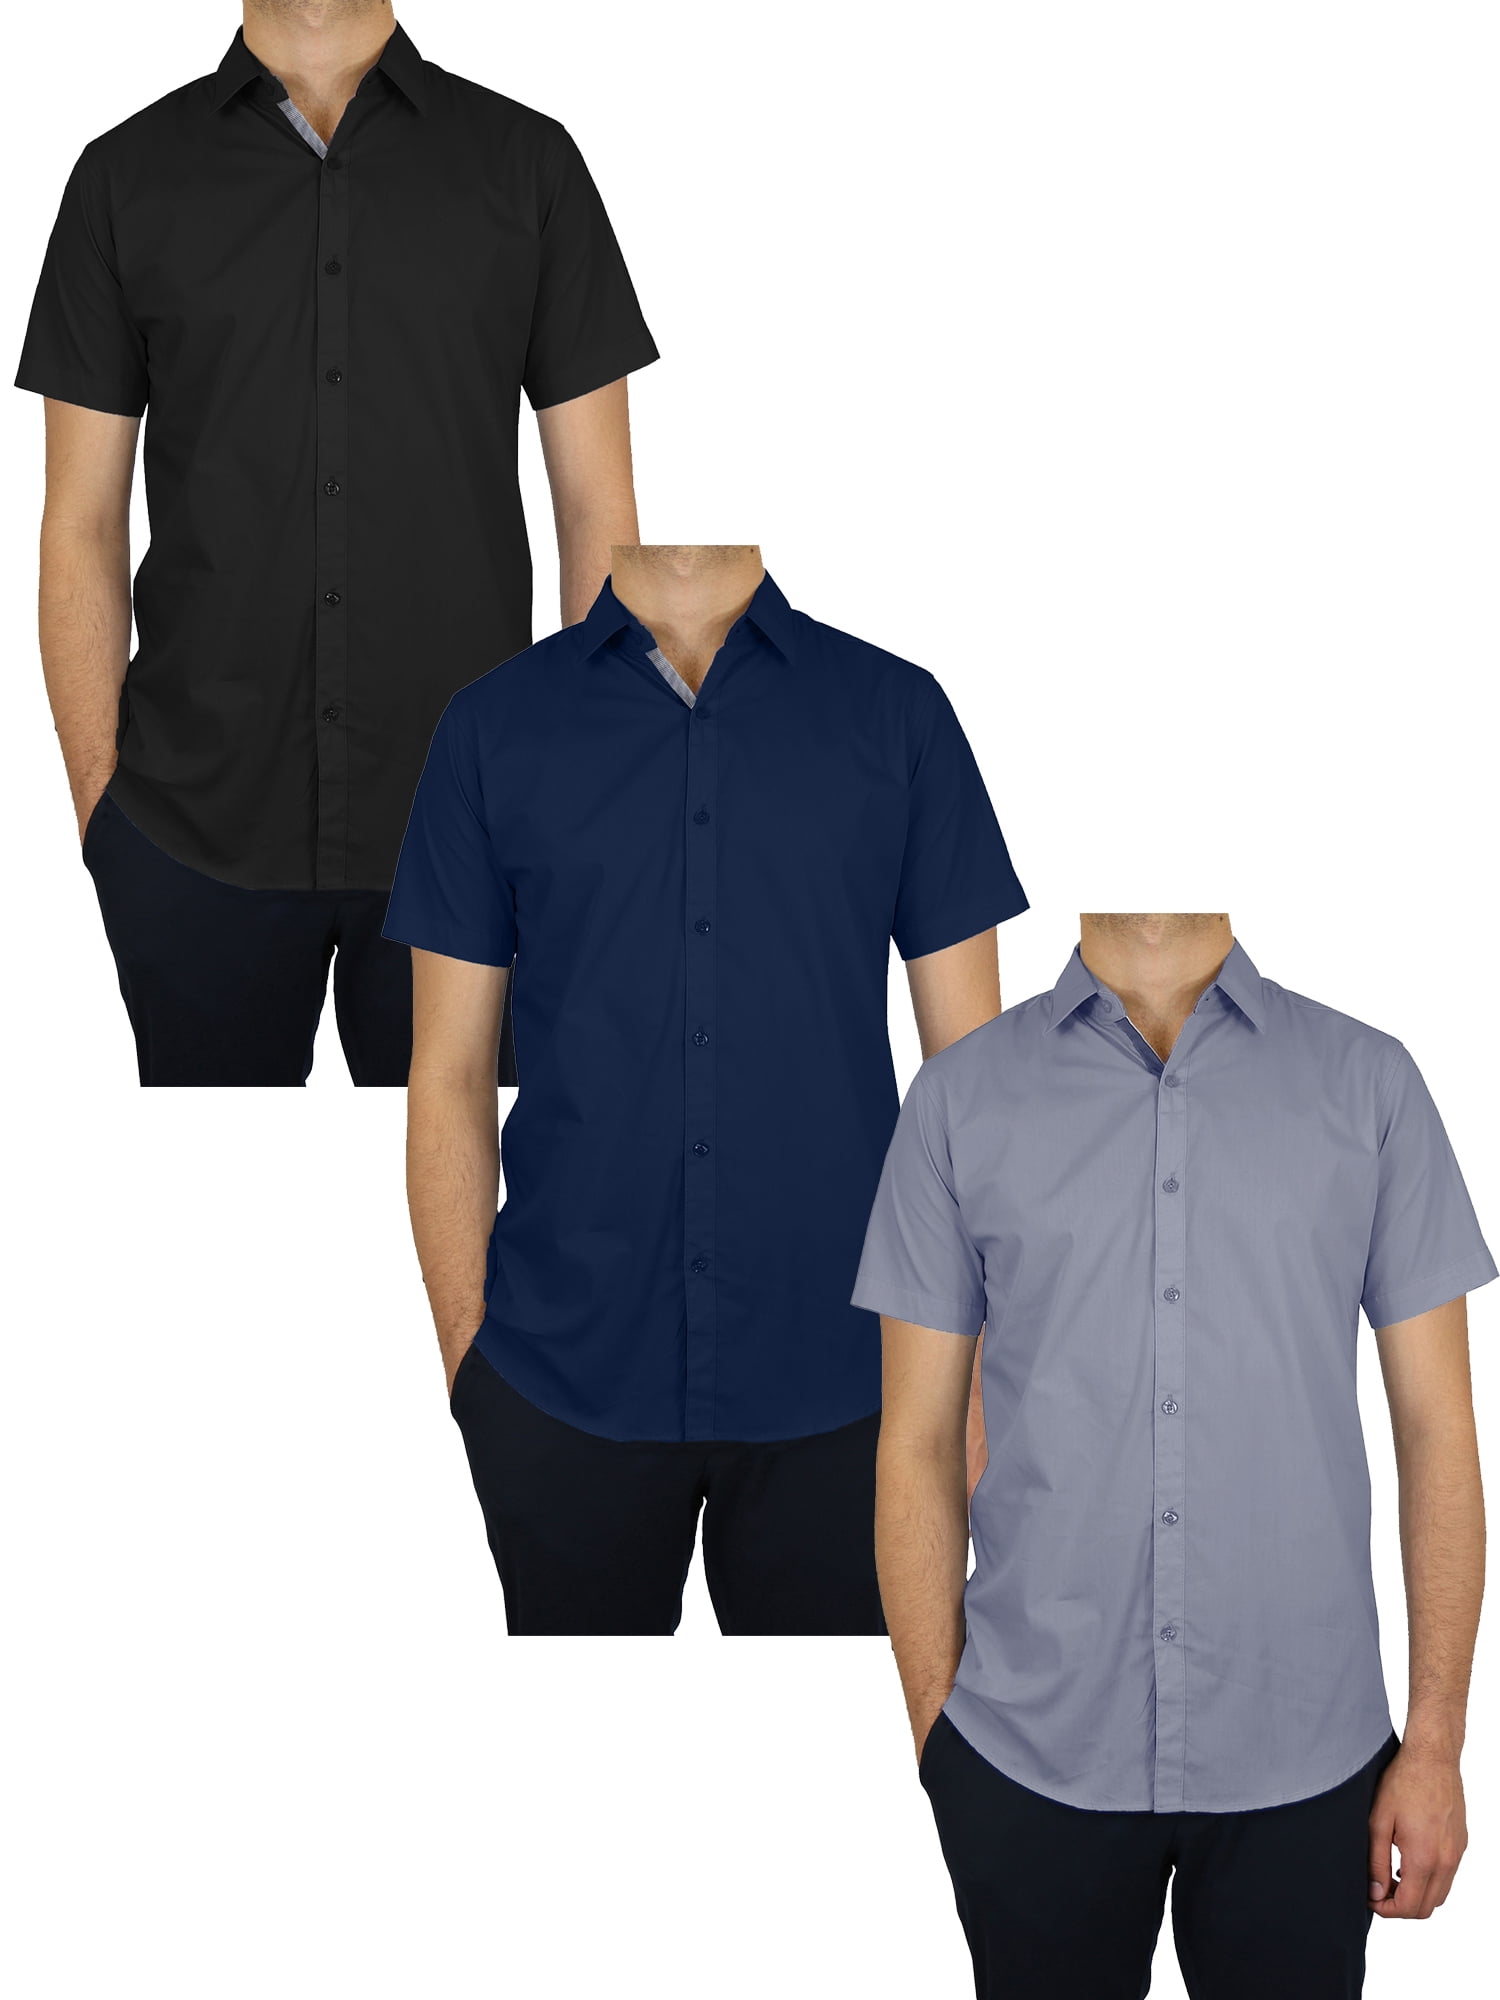 3-Pack Men's Short Sleeve Solid Dress Shirts (S-5XL) - Walmart.com